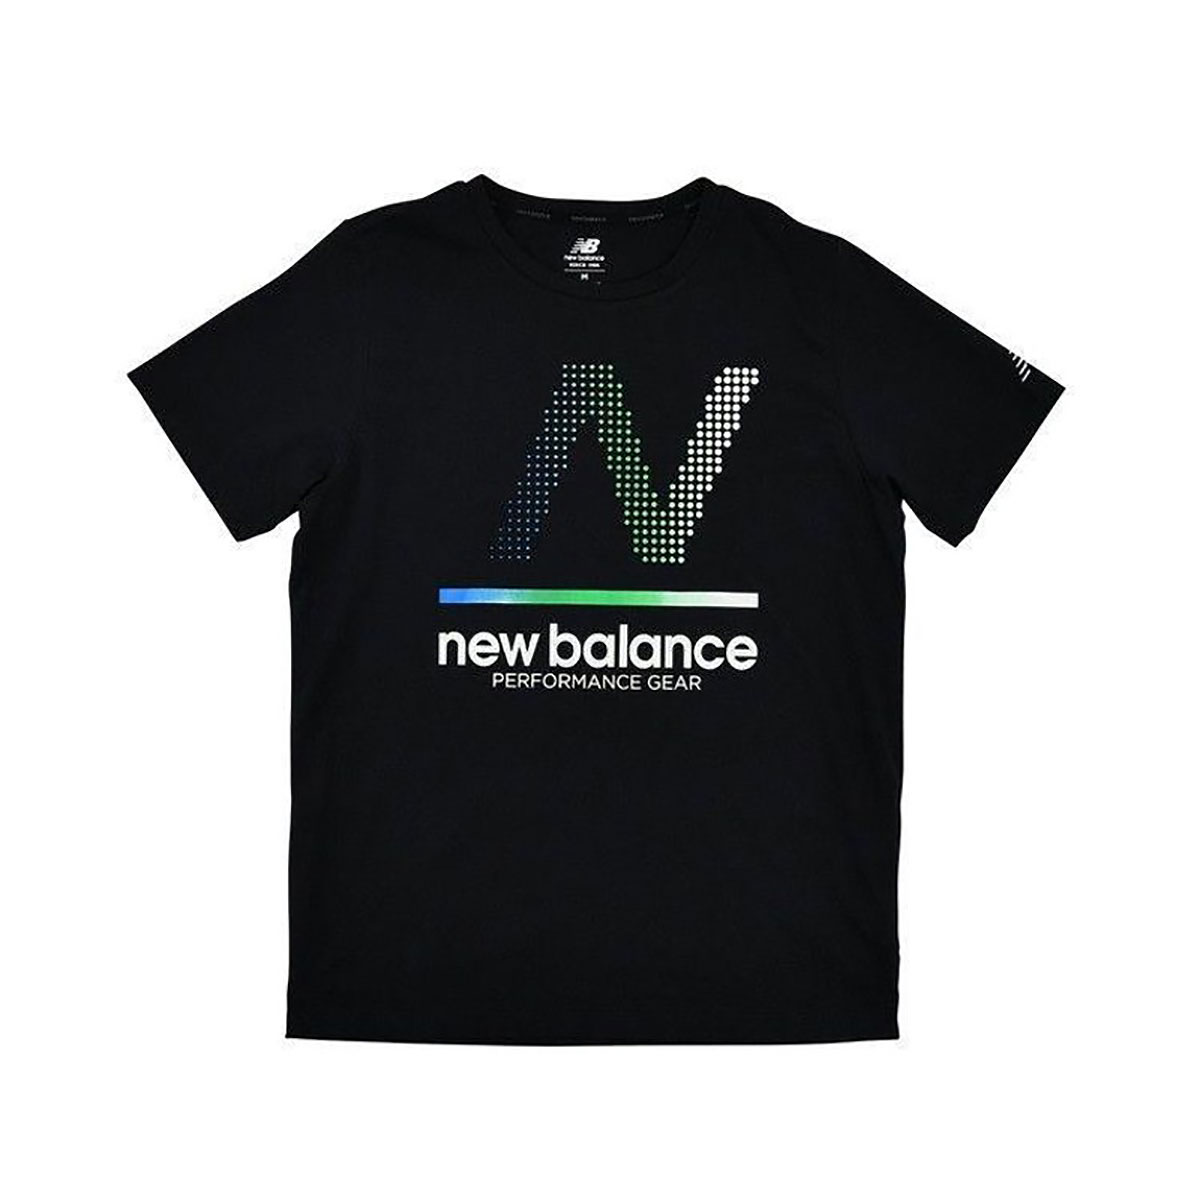 ニューバランス Tシャツ メンズ クルーネック 黒 ブラック newbalance NB ヘザーテッ...